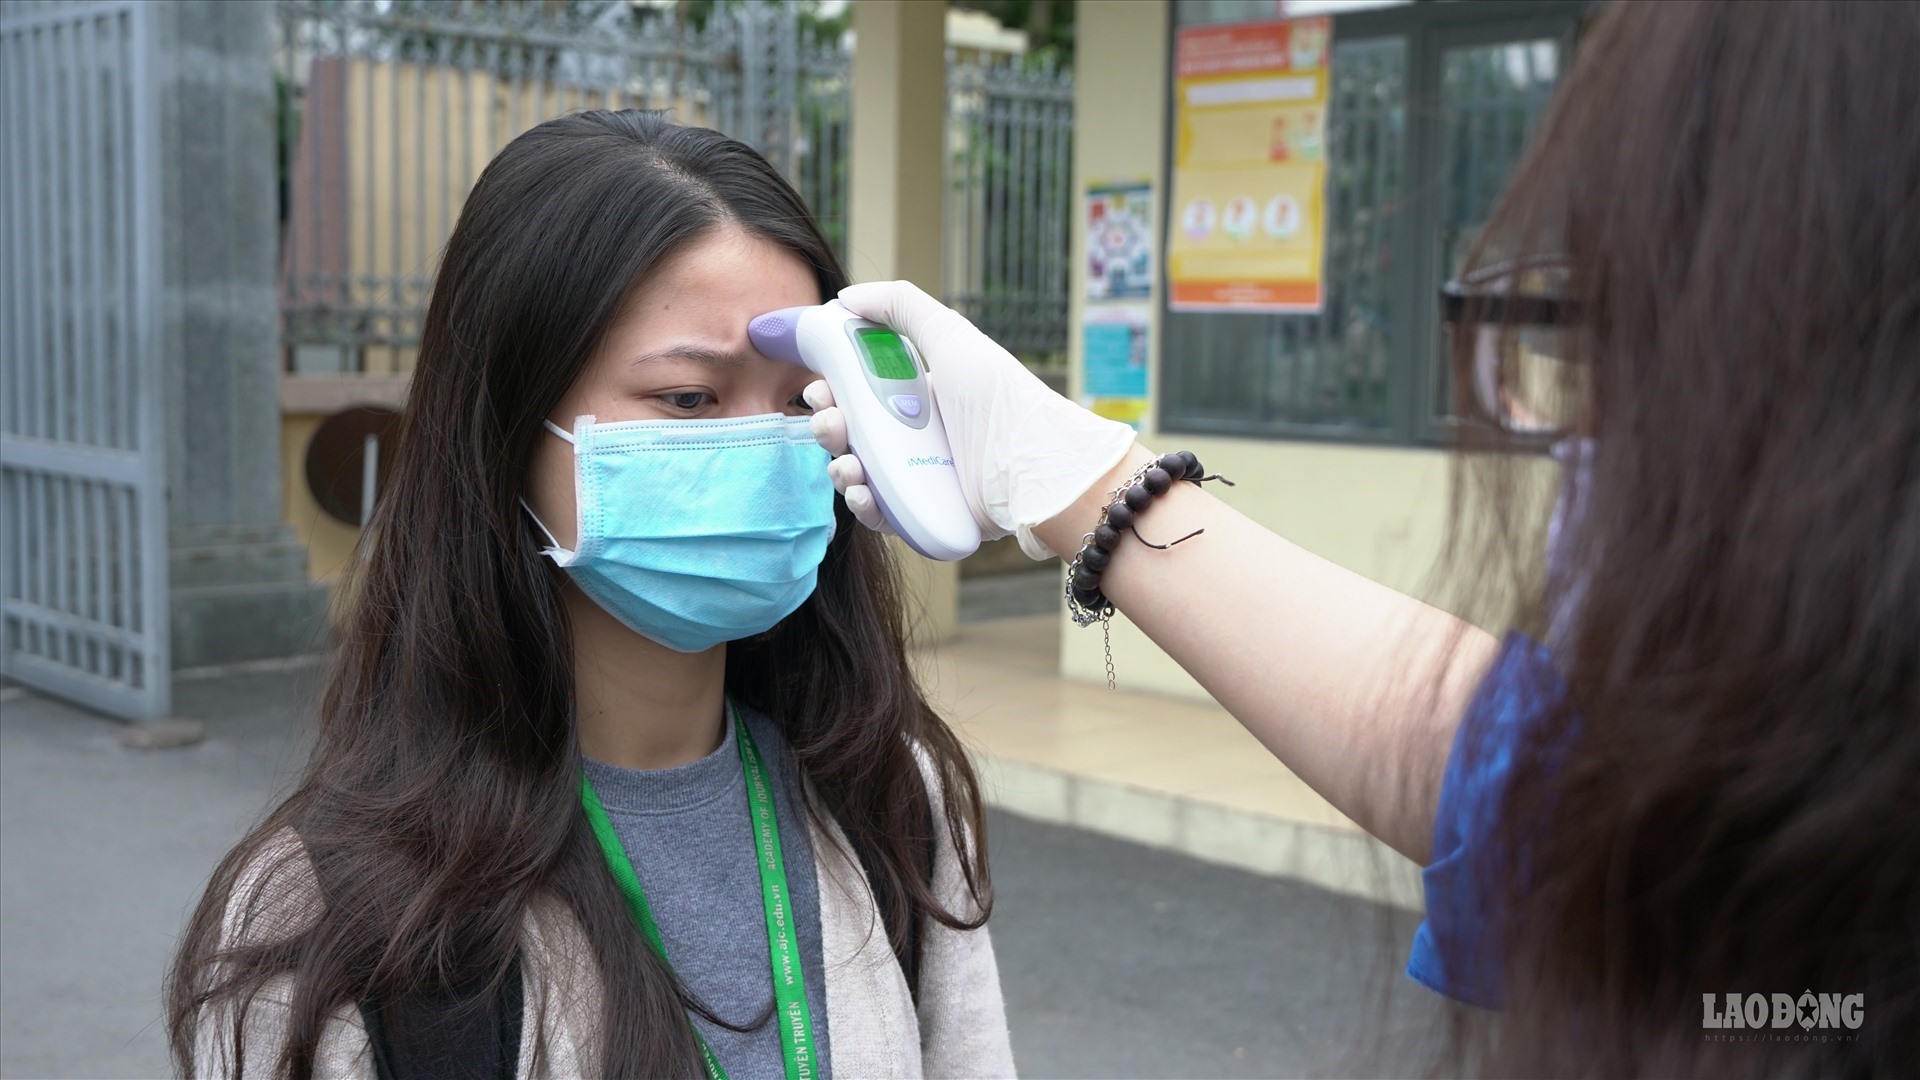 Tại Học viện Báo chí và Tuyên truyền, cán bộ y tế cùng đội tình nguyện thực hiện việc đo nhiệt độ cho sinh viên trước khi vào trường học tập. Ảnh: Học viện Báo chí và Tuyên truyền.